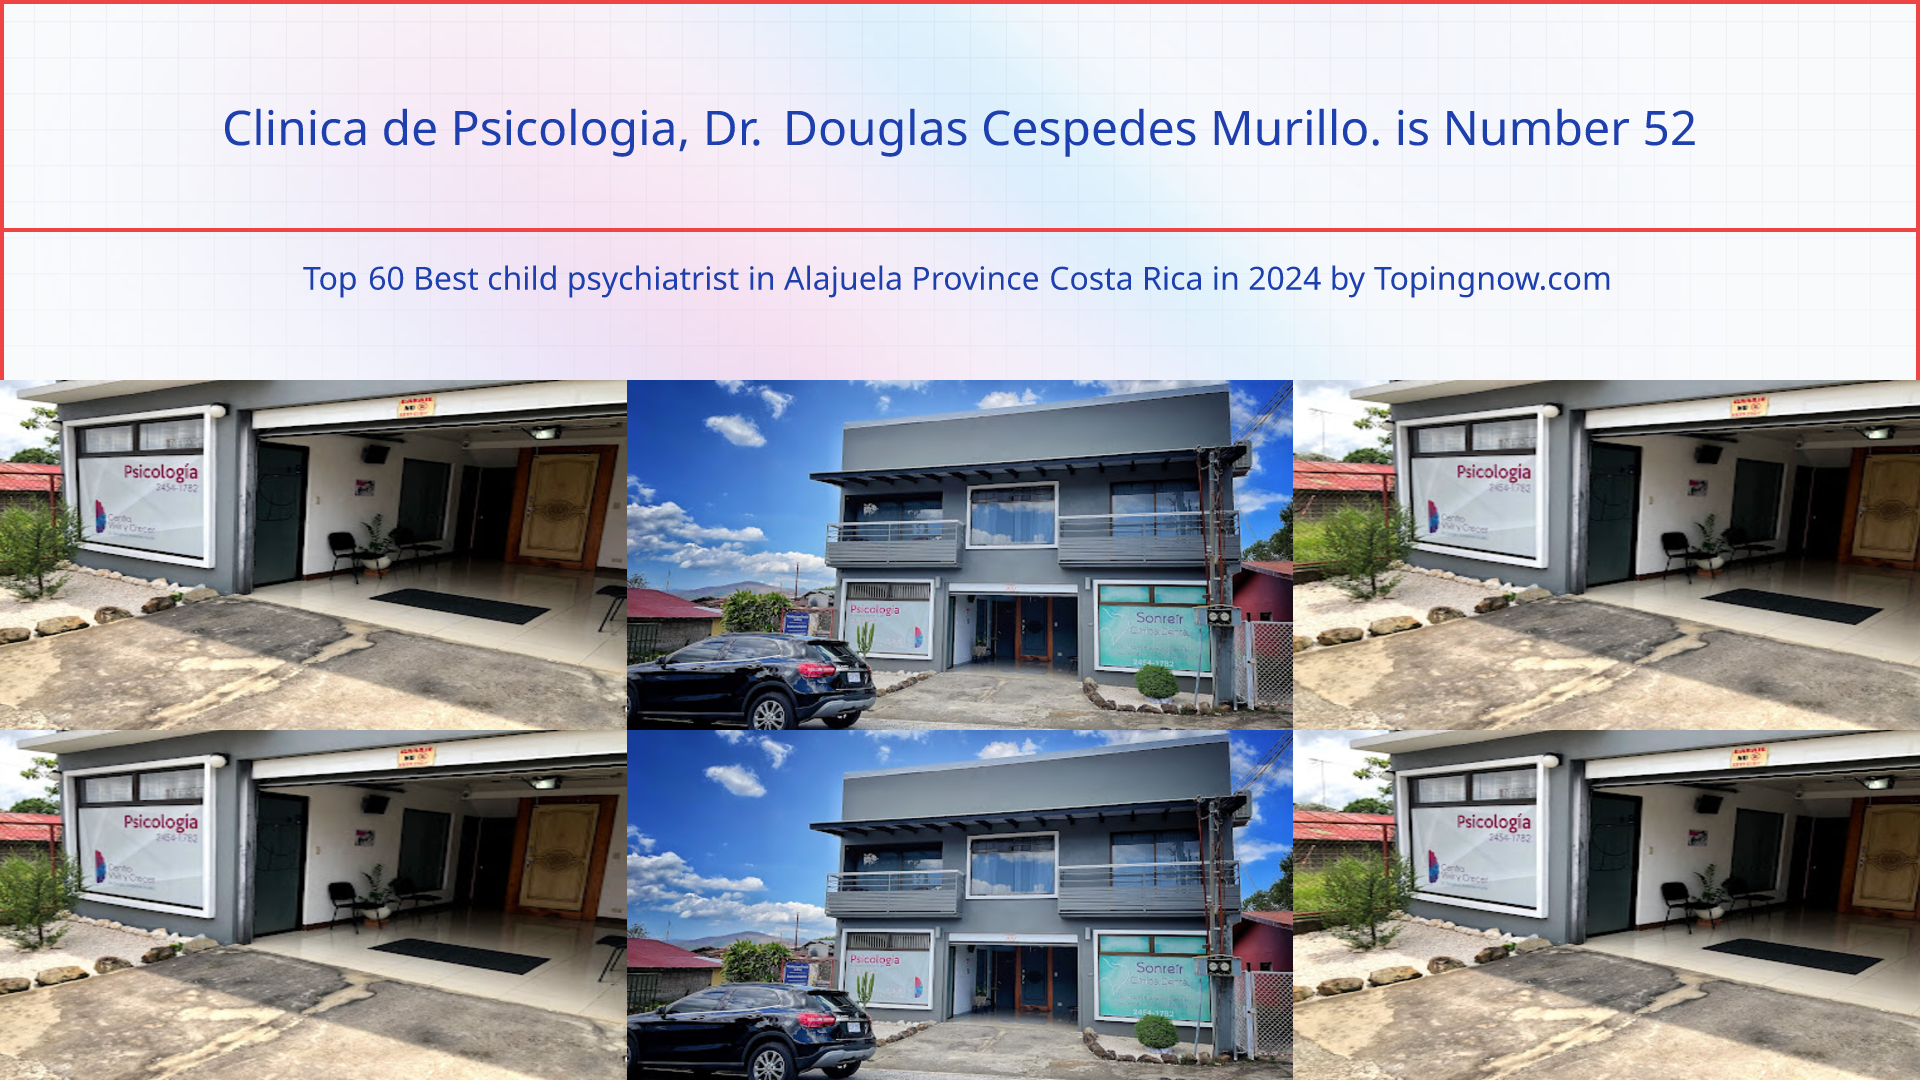 Clinica de Psicologia, Dr. Douglas Cespedes Murillo.: Top 60 Best child psychiatrist in Alajuela Province Costa Rica in 2024